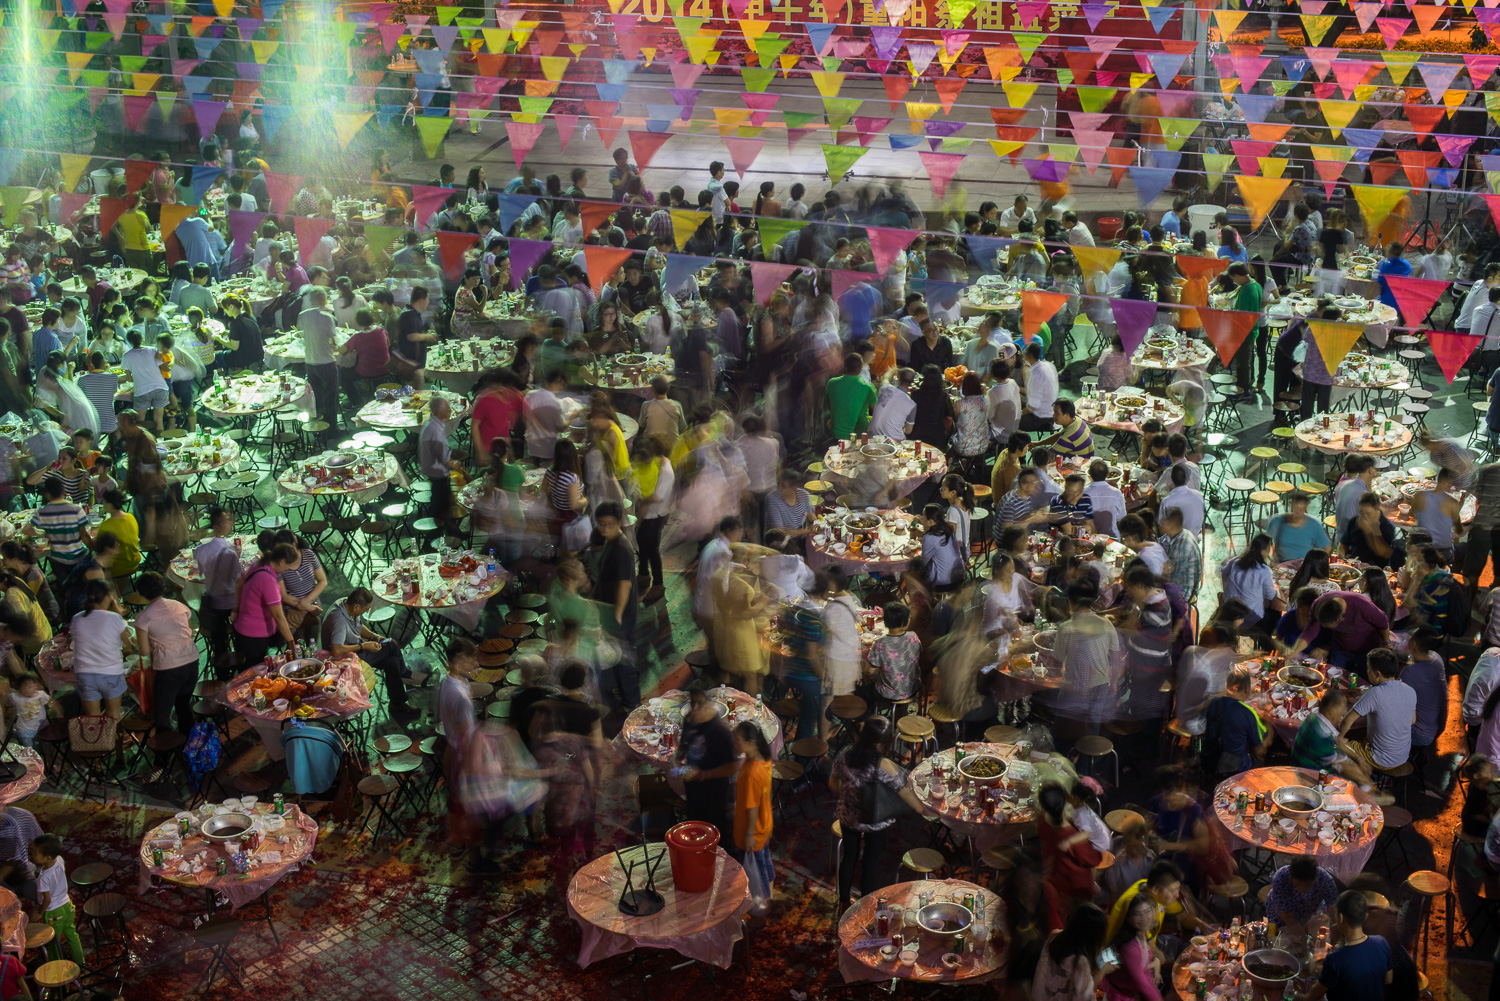  Community celebration in Shenzhen, China 